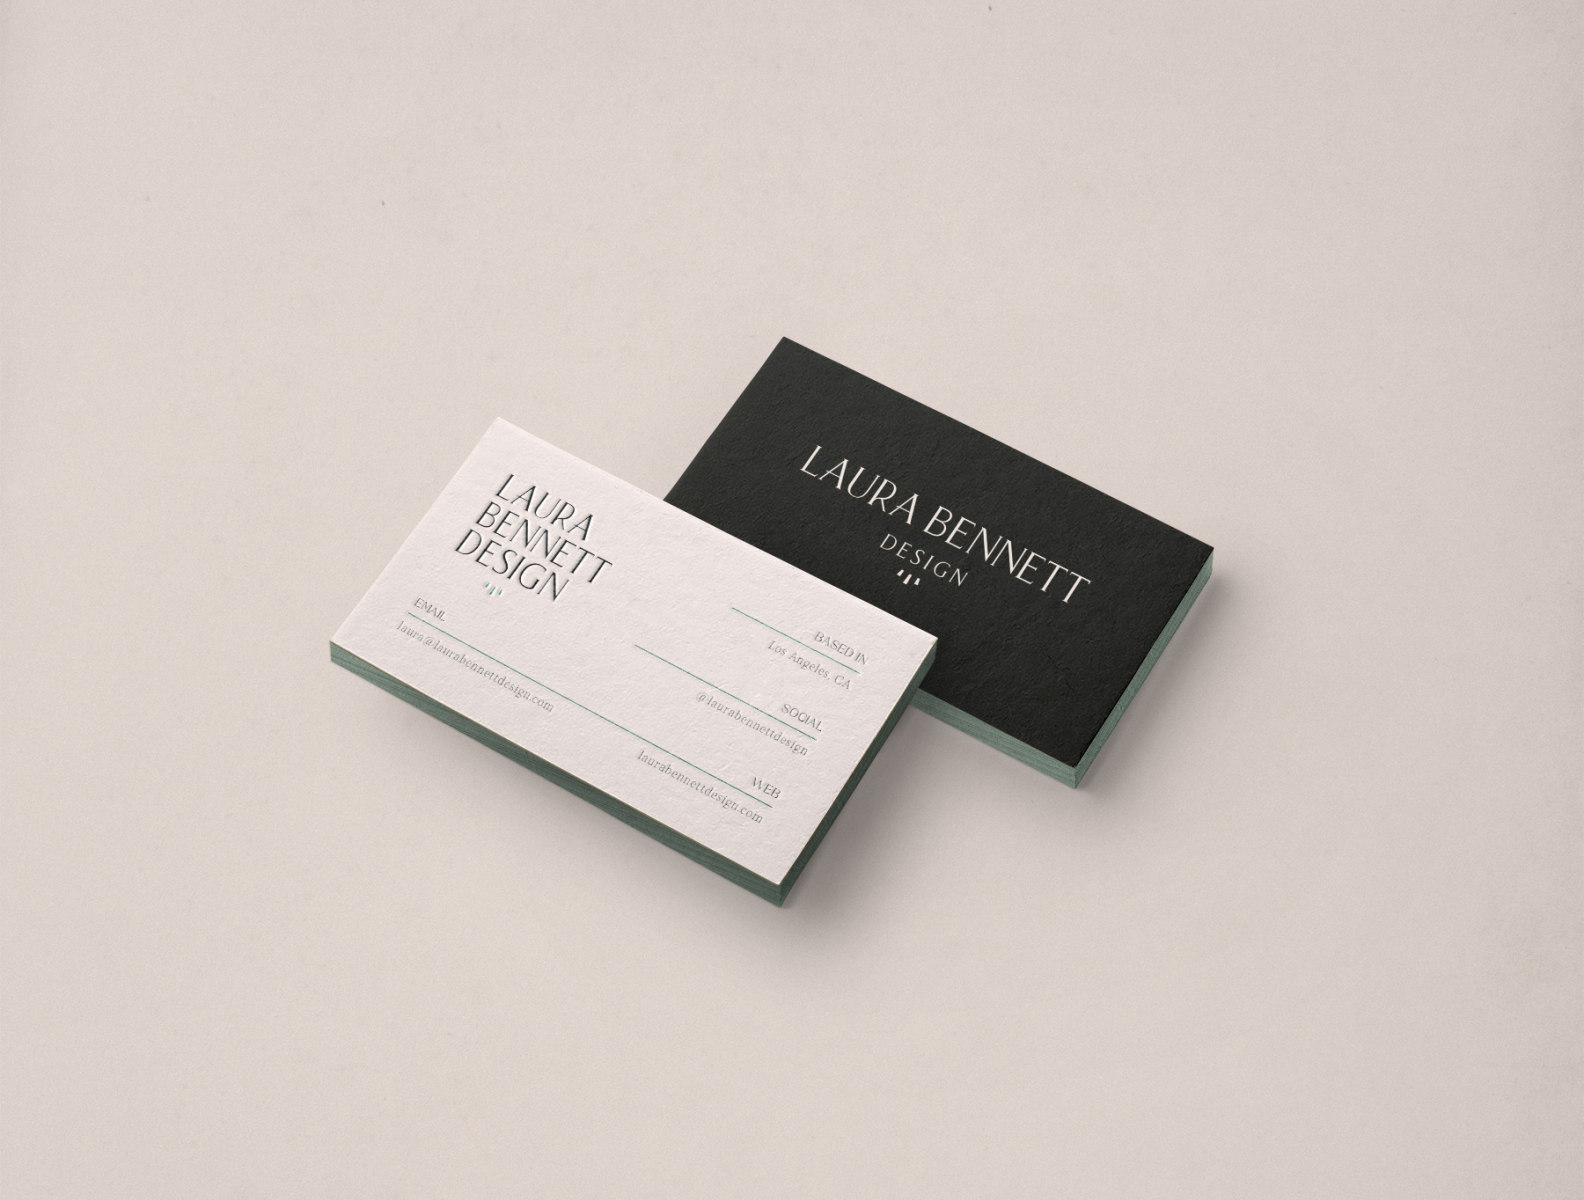 Laura Bennett Design Business Cards By Laura Bennett On Dribbble